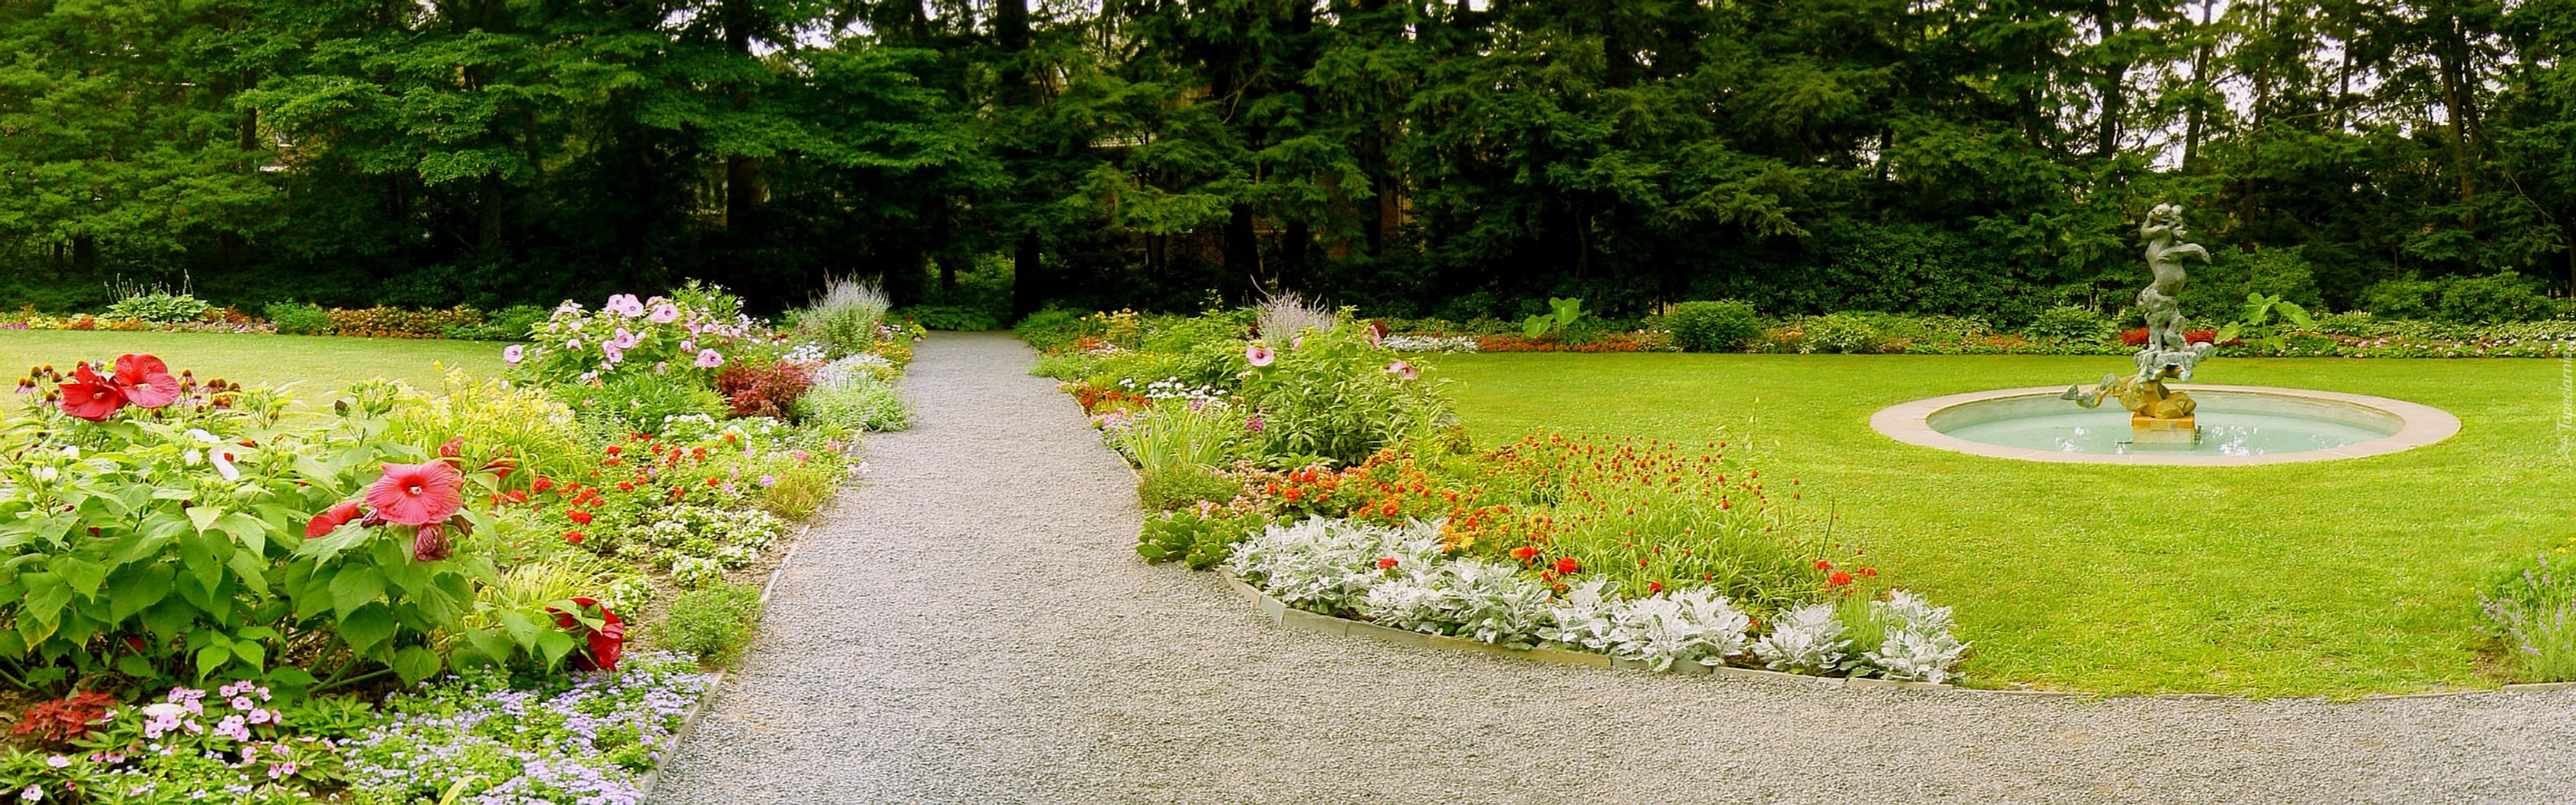 Ogród, Kwiaty, Zieleń, Fontanna